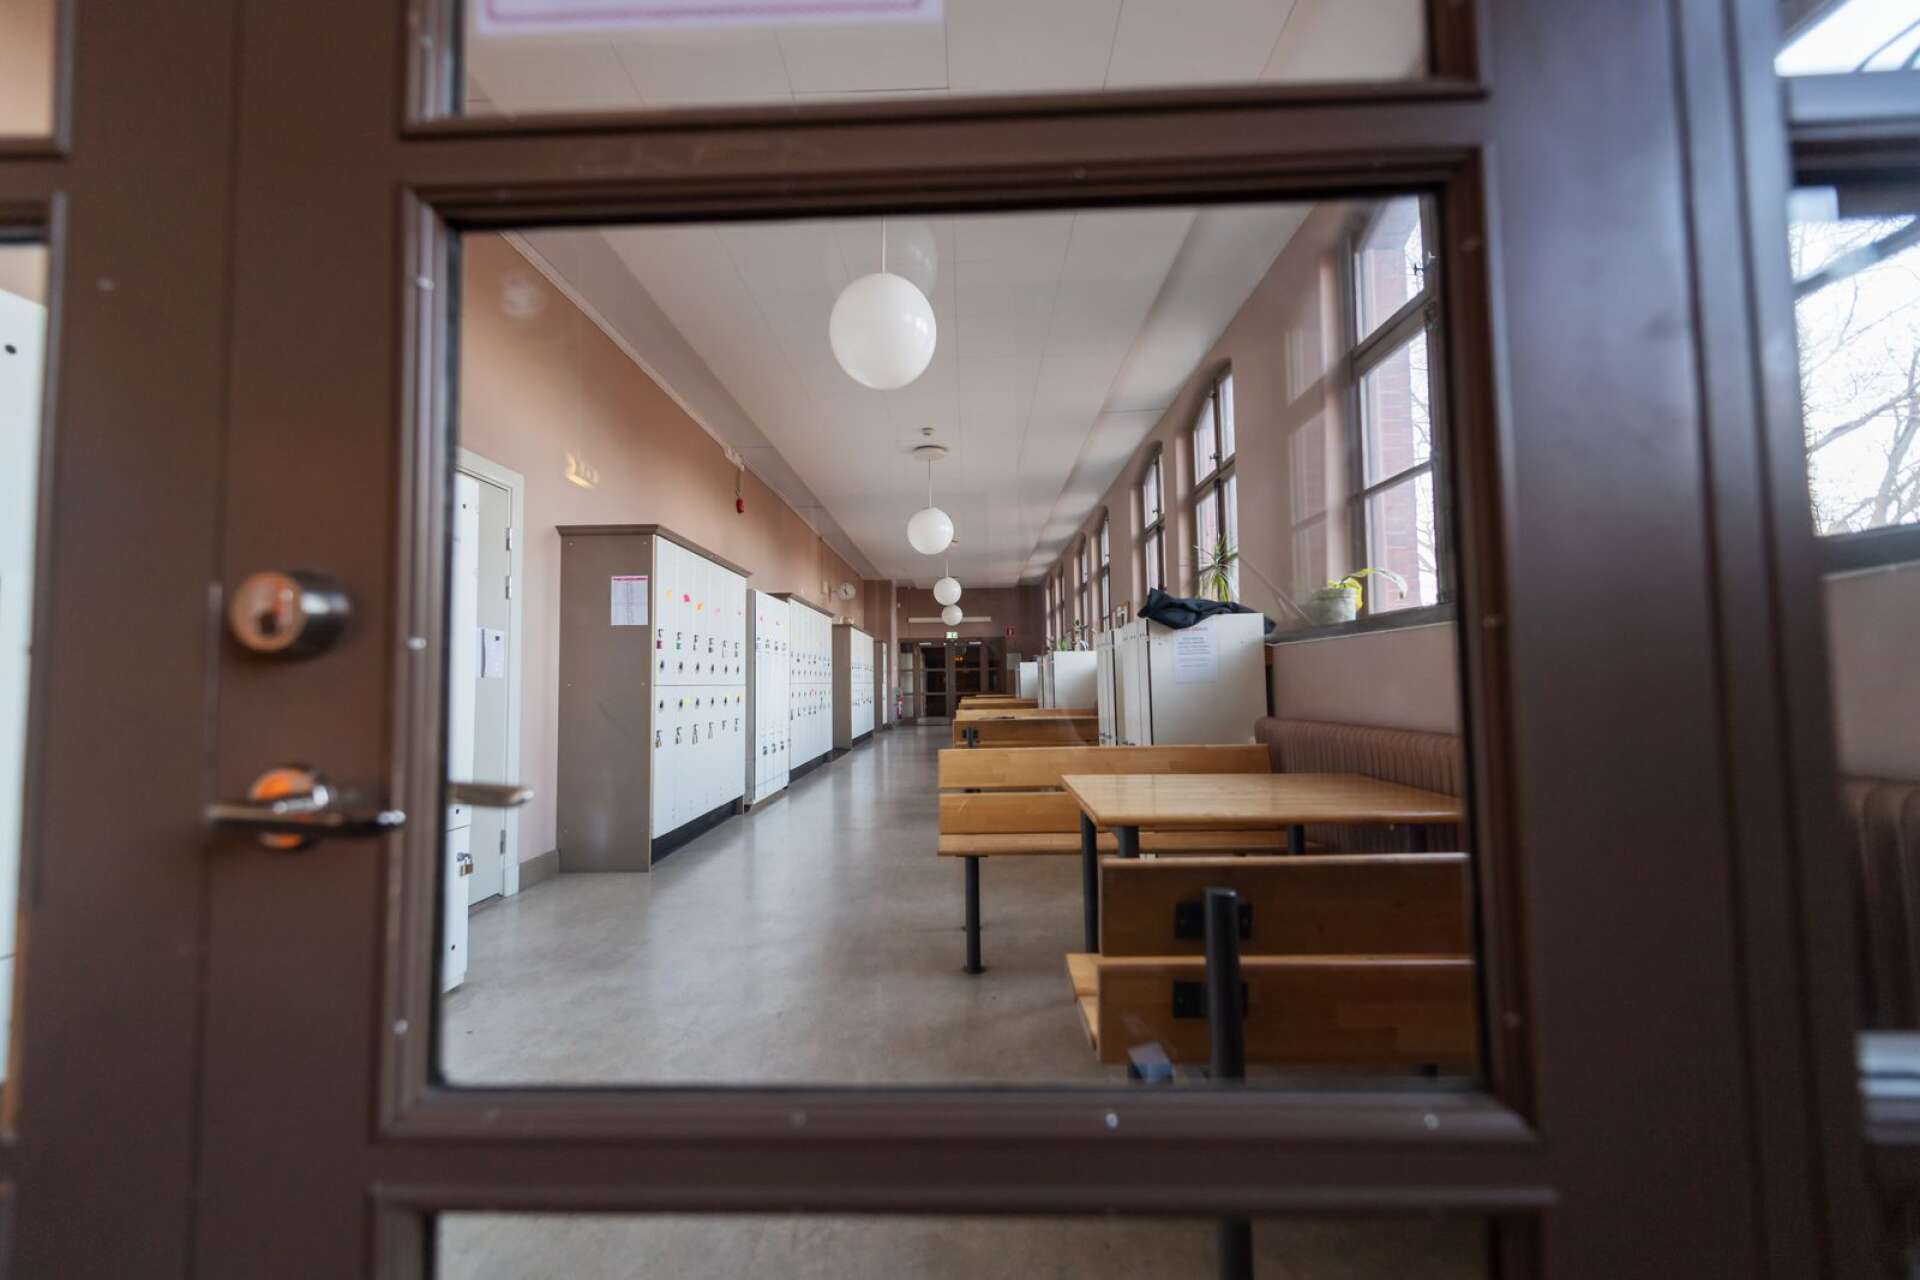 En kvinna åtalas för ringa misshandel och övergrepp i rättssak efter en händelse på en gymnasieskola i Kristinehamn förra året. Genrebild.